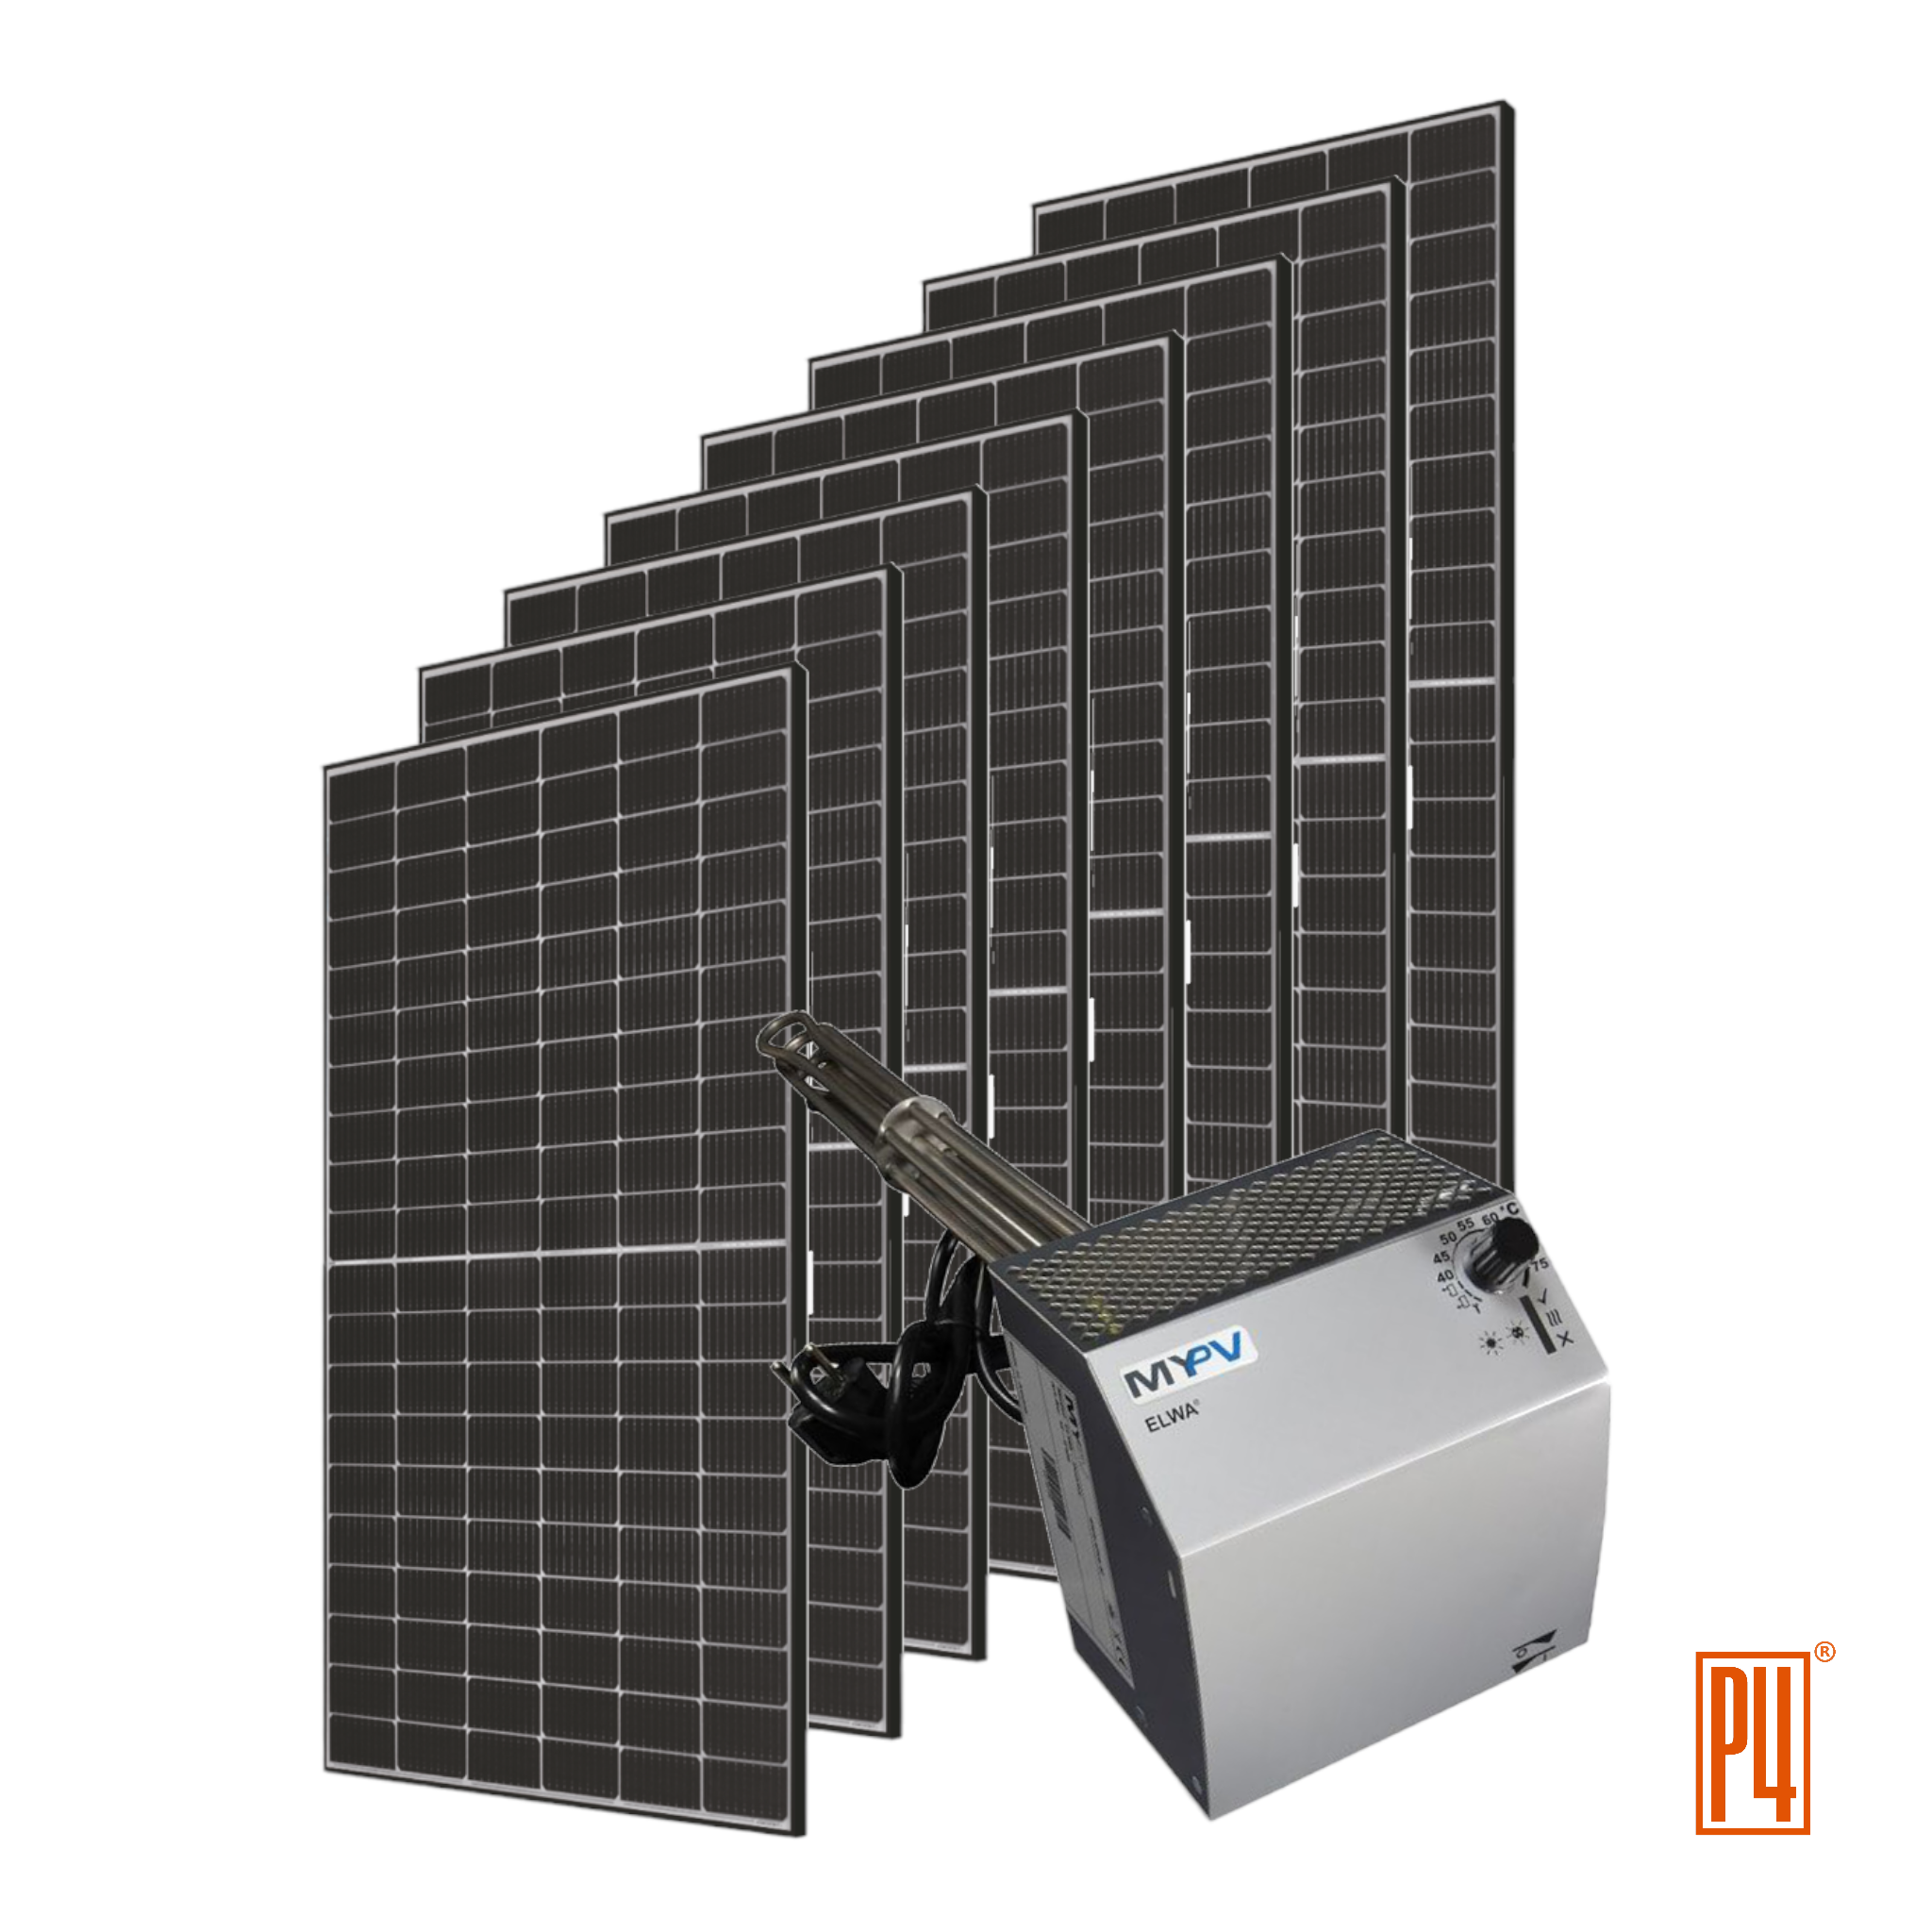 PV Photovoltaik Solar Warmwasseraufbereitung günstig kaufen und autark sein off grid inselanlage